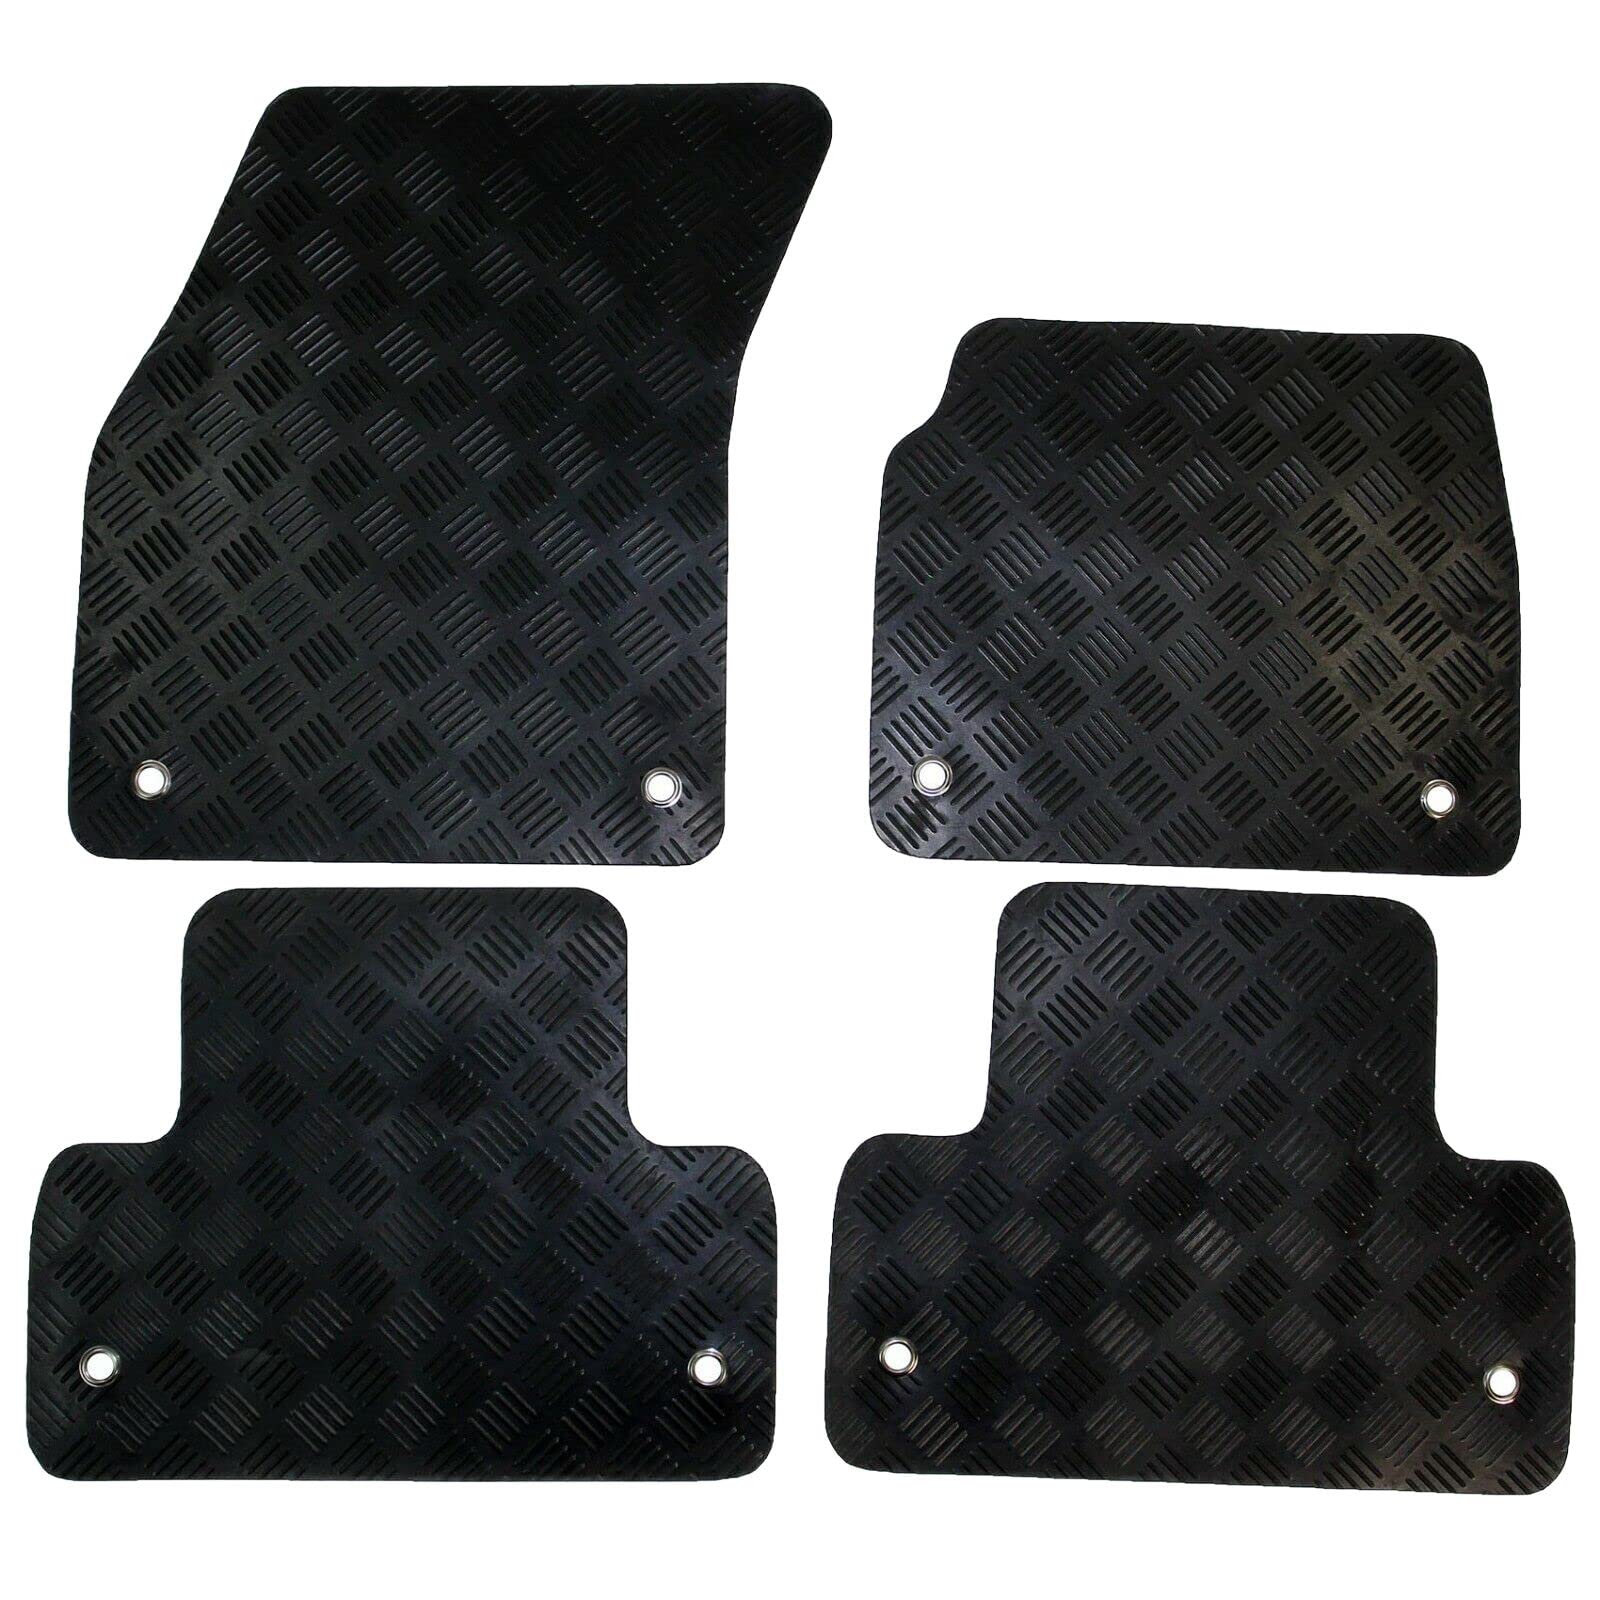 Gummi-Auto-Fußmatten-Set, kompatibel / Ersatz für Volkswagen UP (Baujahr 2012-Datum), maßgeschneiderte Matten, strapazierfähig, wasserdicht, rutschfest von Covprotec